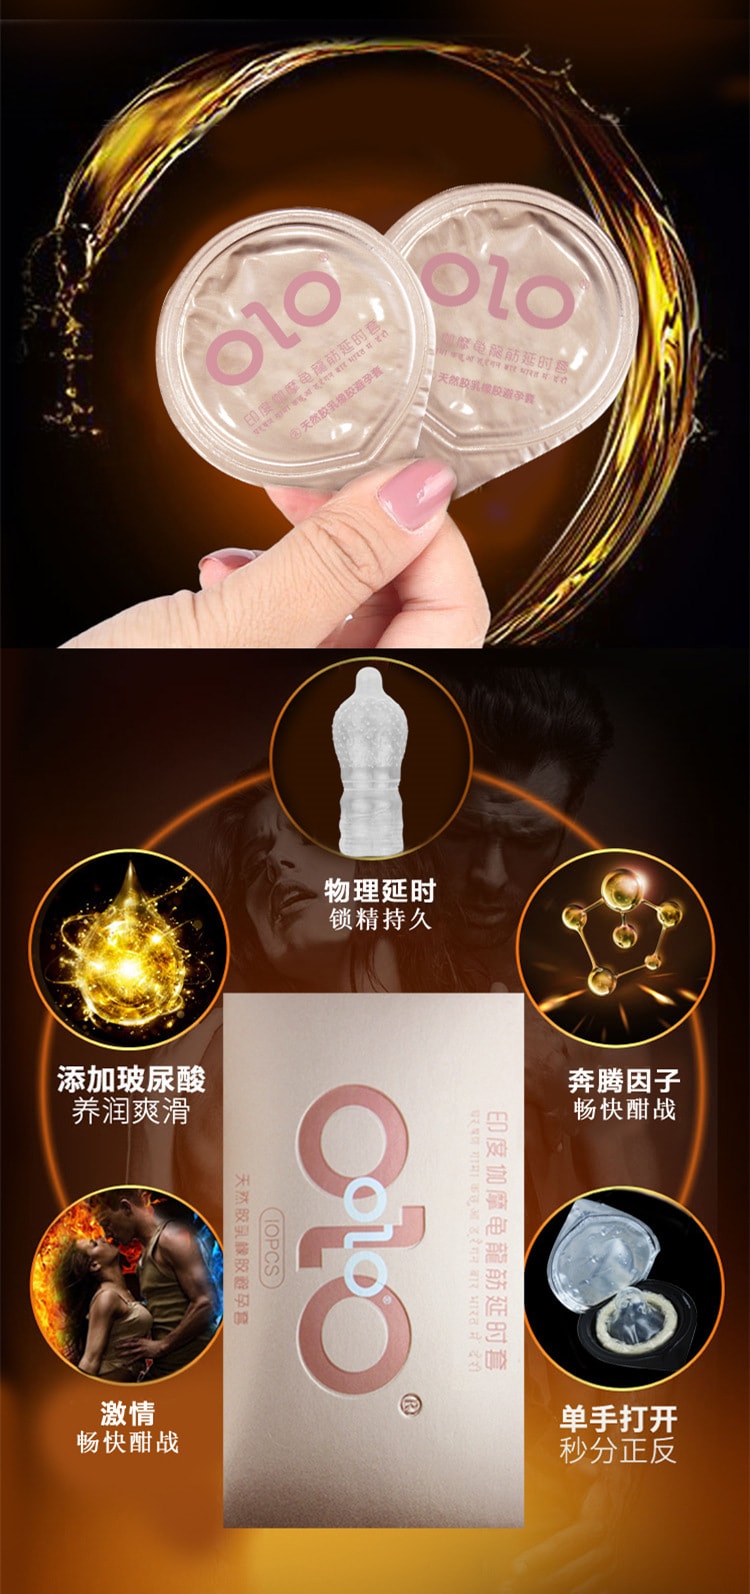 【中国直邮】OLO 印度控时避孕套超薄001安全套 金盒 10只装